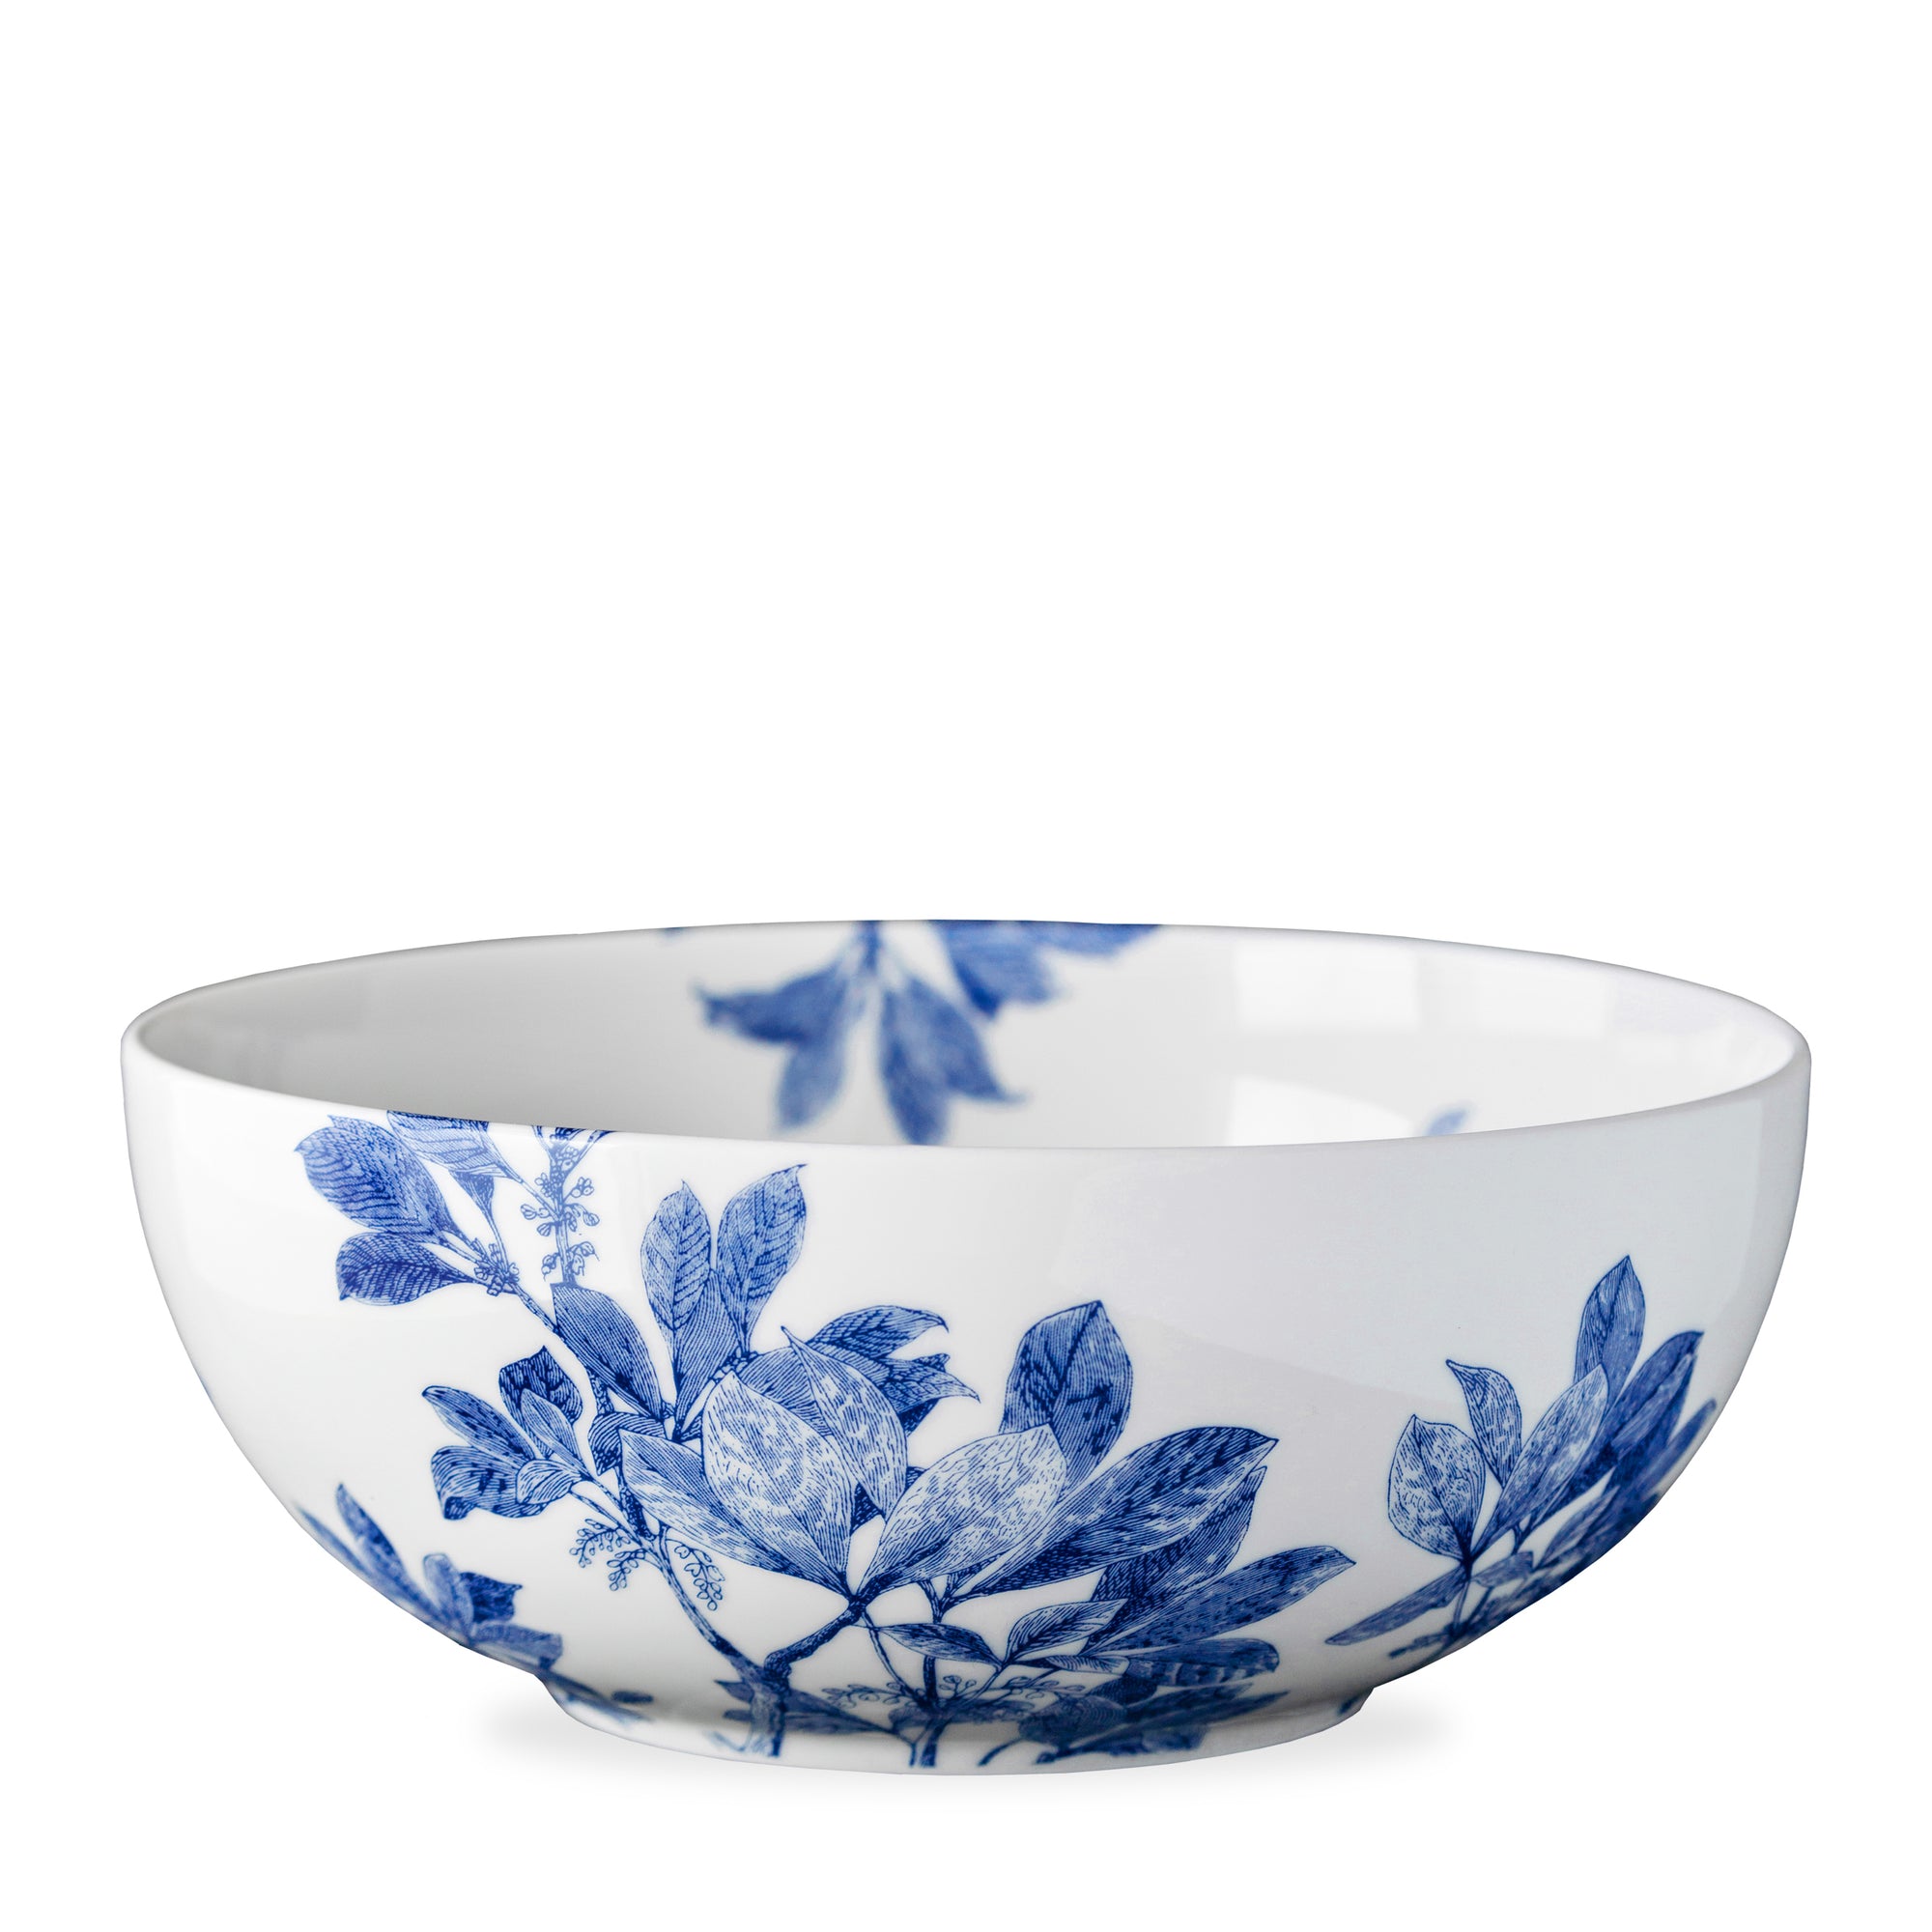 Caskata Artisanal Home's Arbor Vegetable Serving Bowl with a blue floral and leaf design, crafted from premium porcelain. Dishwasher safe.